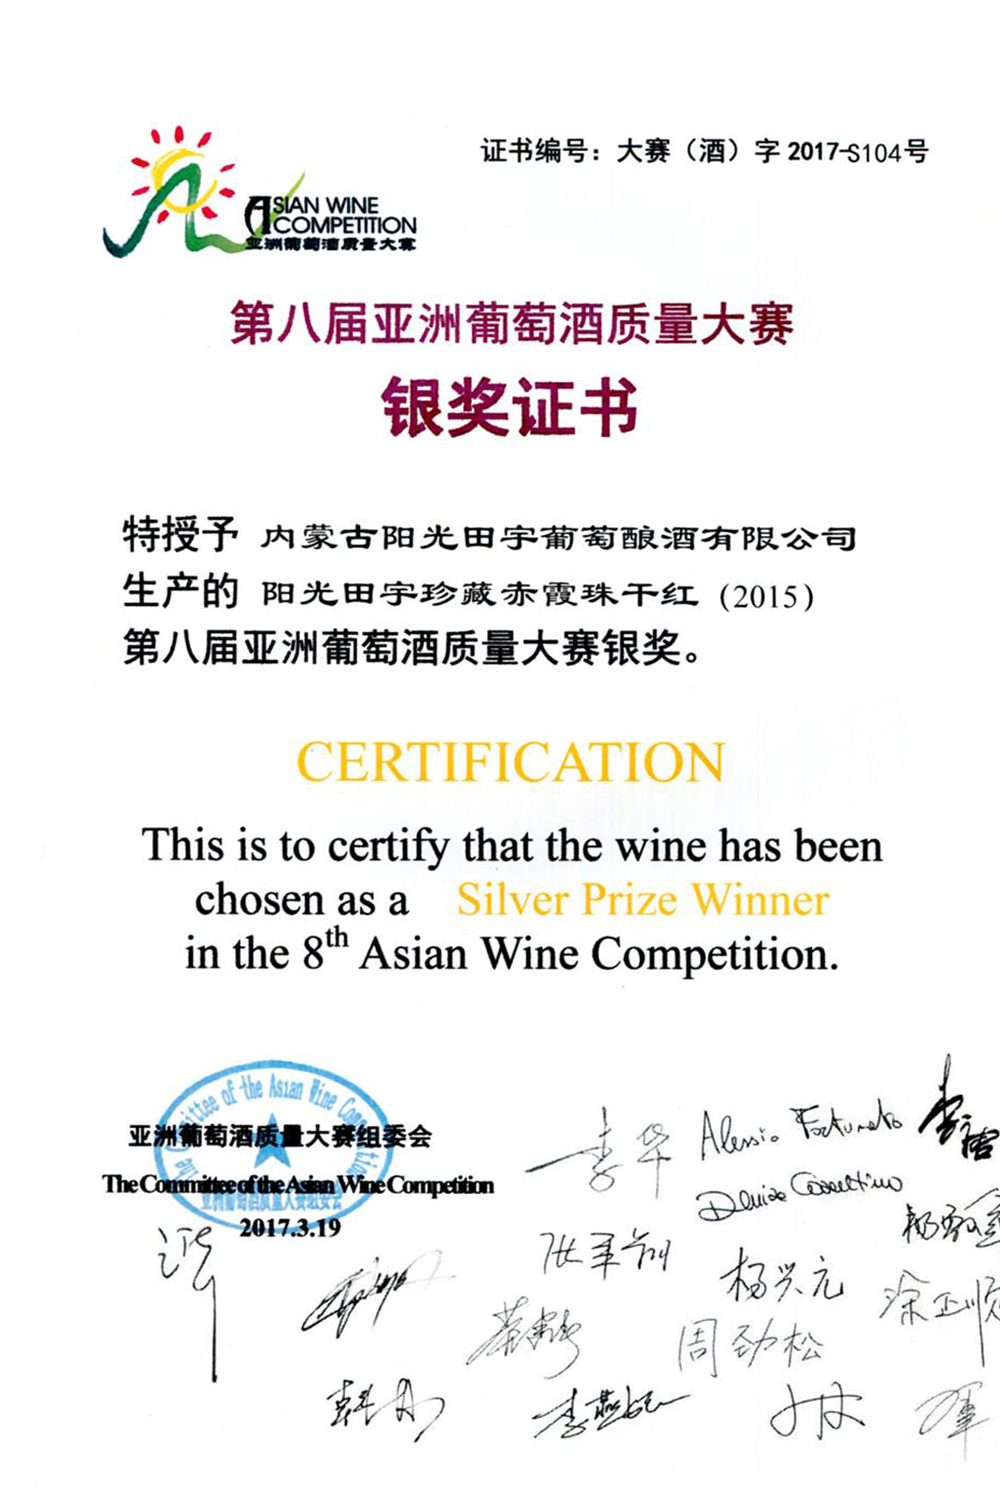 阳光田宇珍藏赤霞珠干红（2015）葡萄酒荣获第八届亚洲葡萄酒质量大赛银奖；